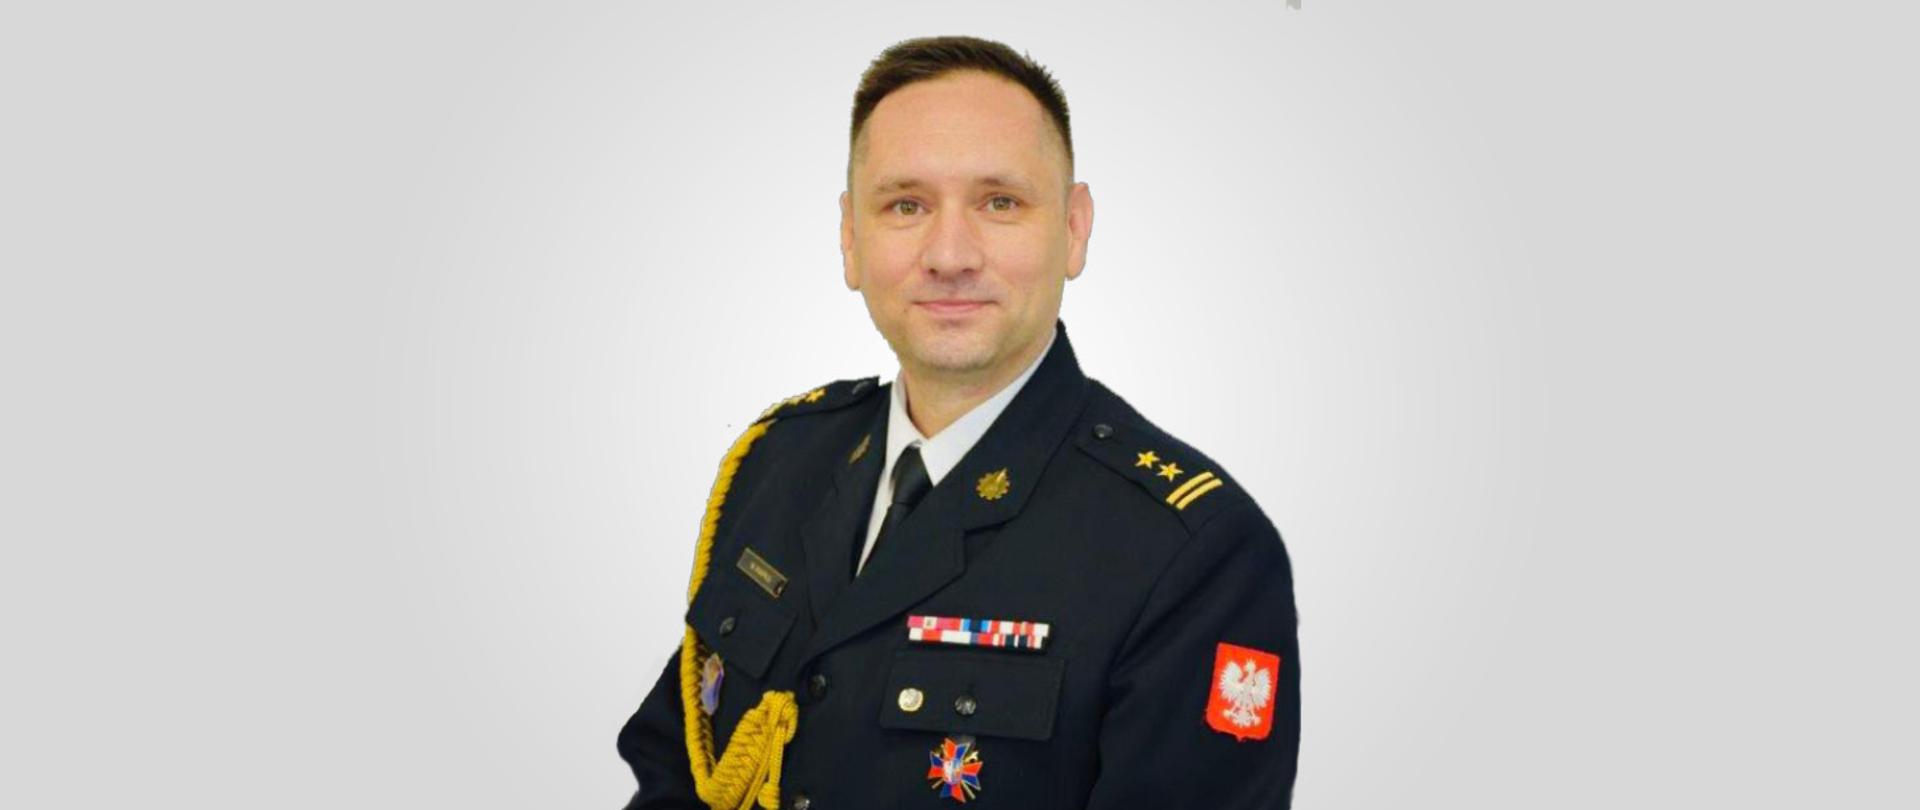 Komendant Miejski Państwowej Straży Pożarnej w Tychach brygadier Wojciech Rapka